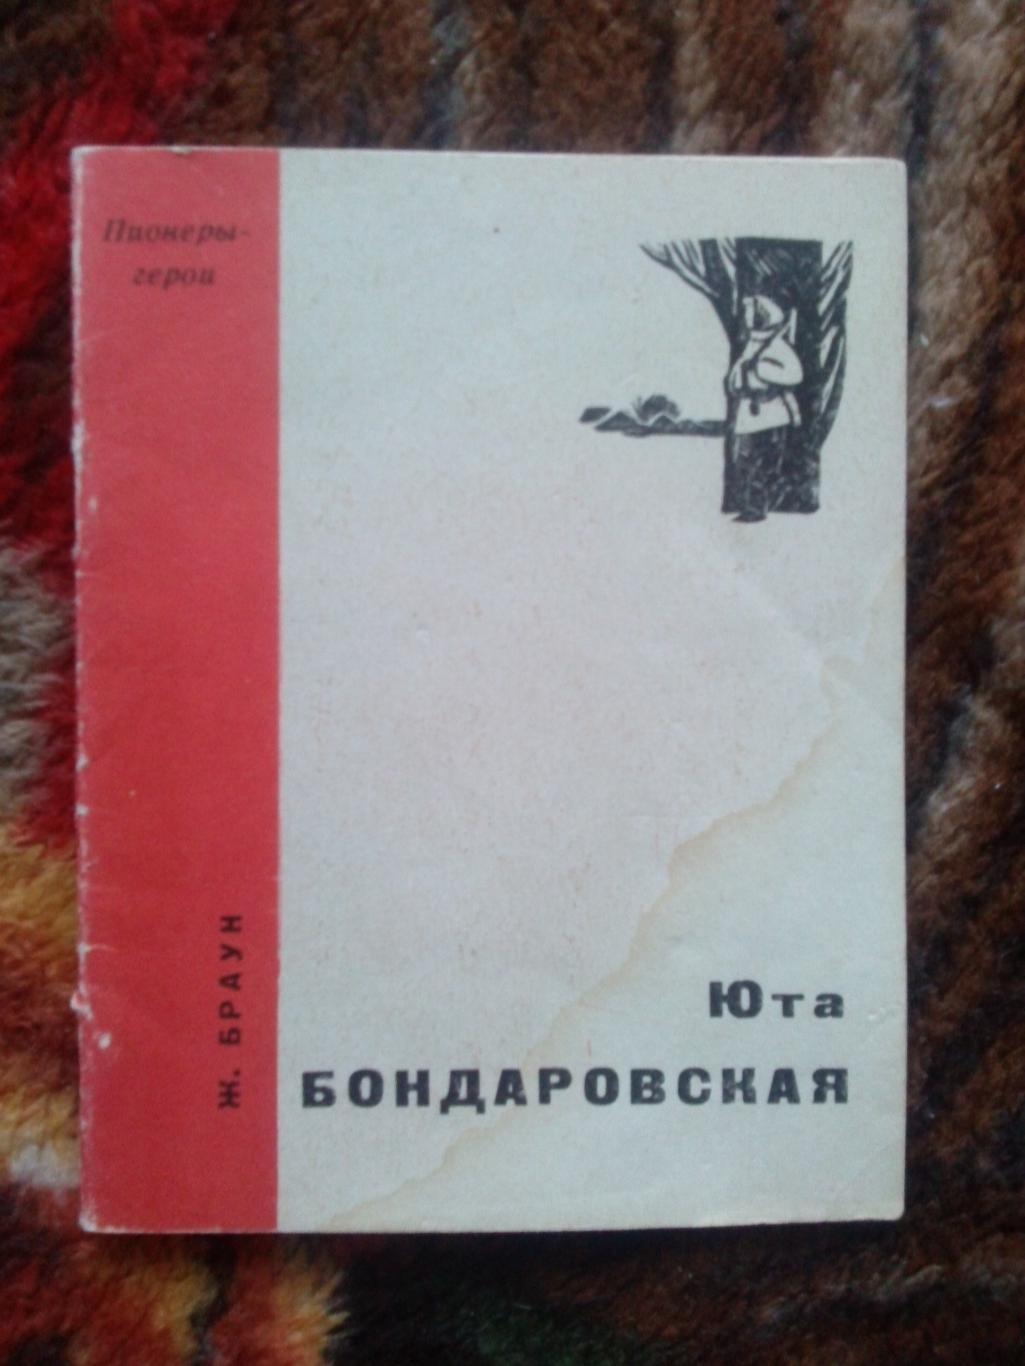 Пионеры-герои (Плакат + брошюра) 1967 г. Юта Бондаровская (Пионер , агитация) 3